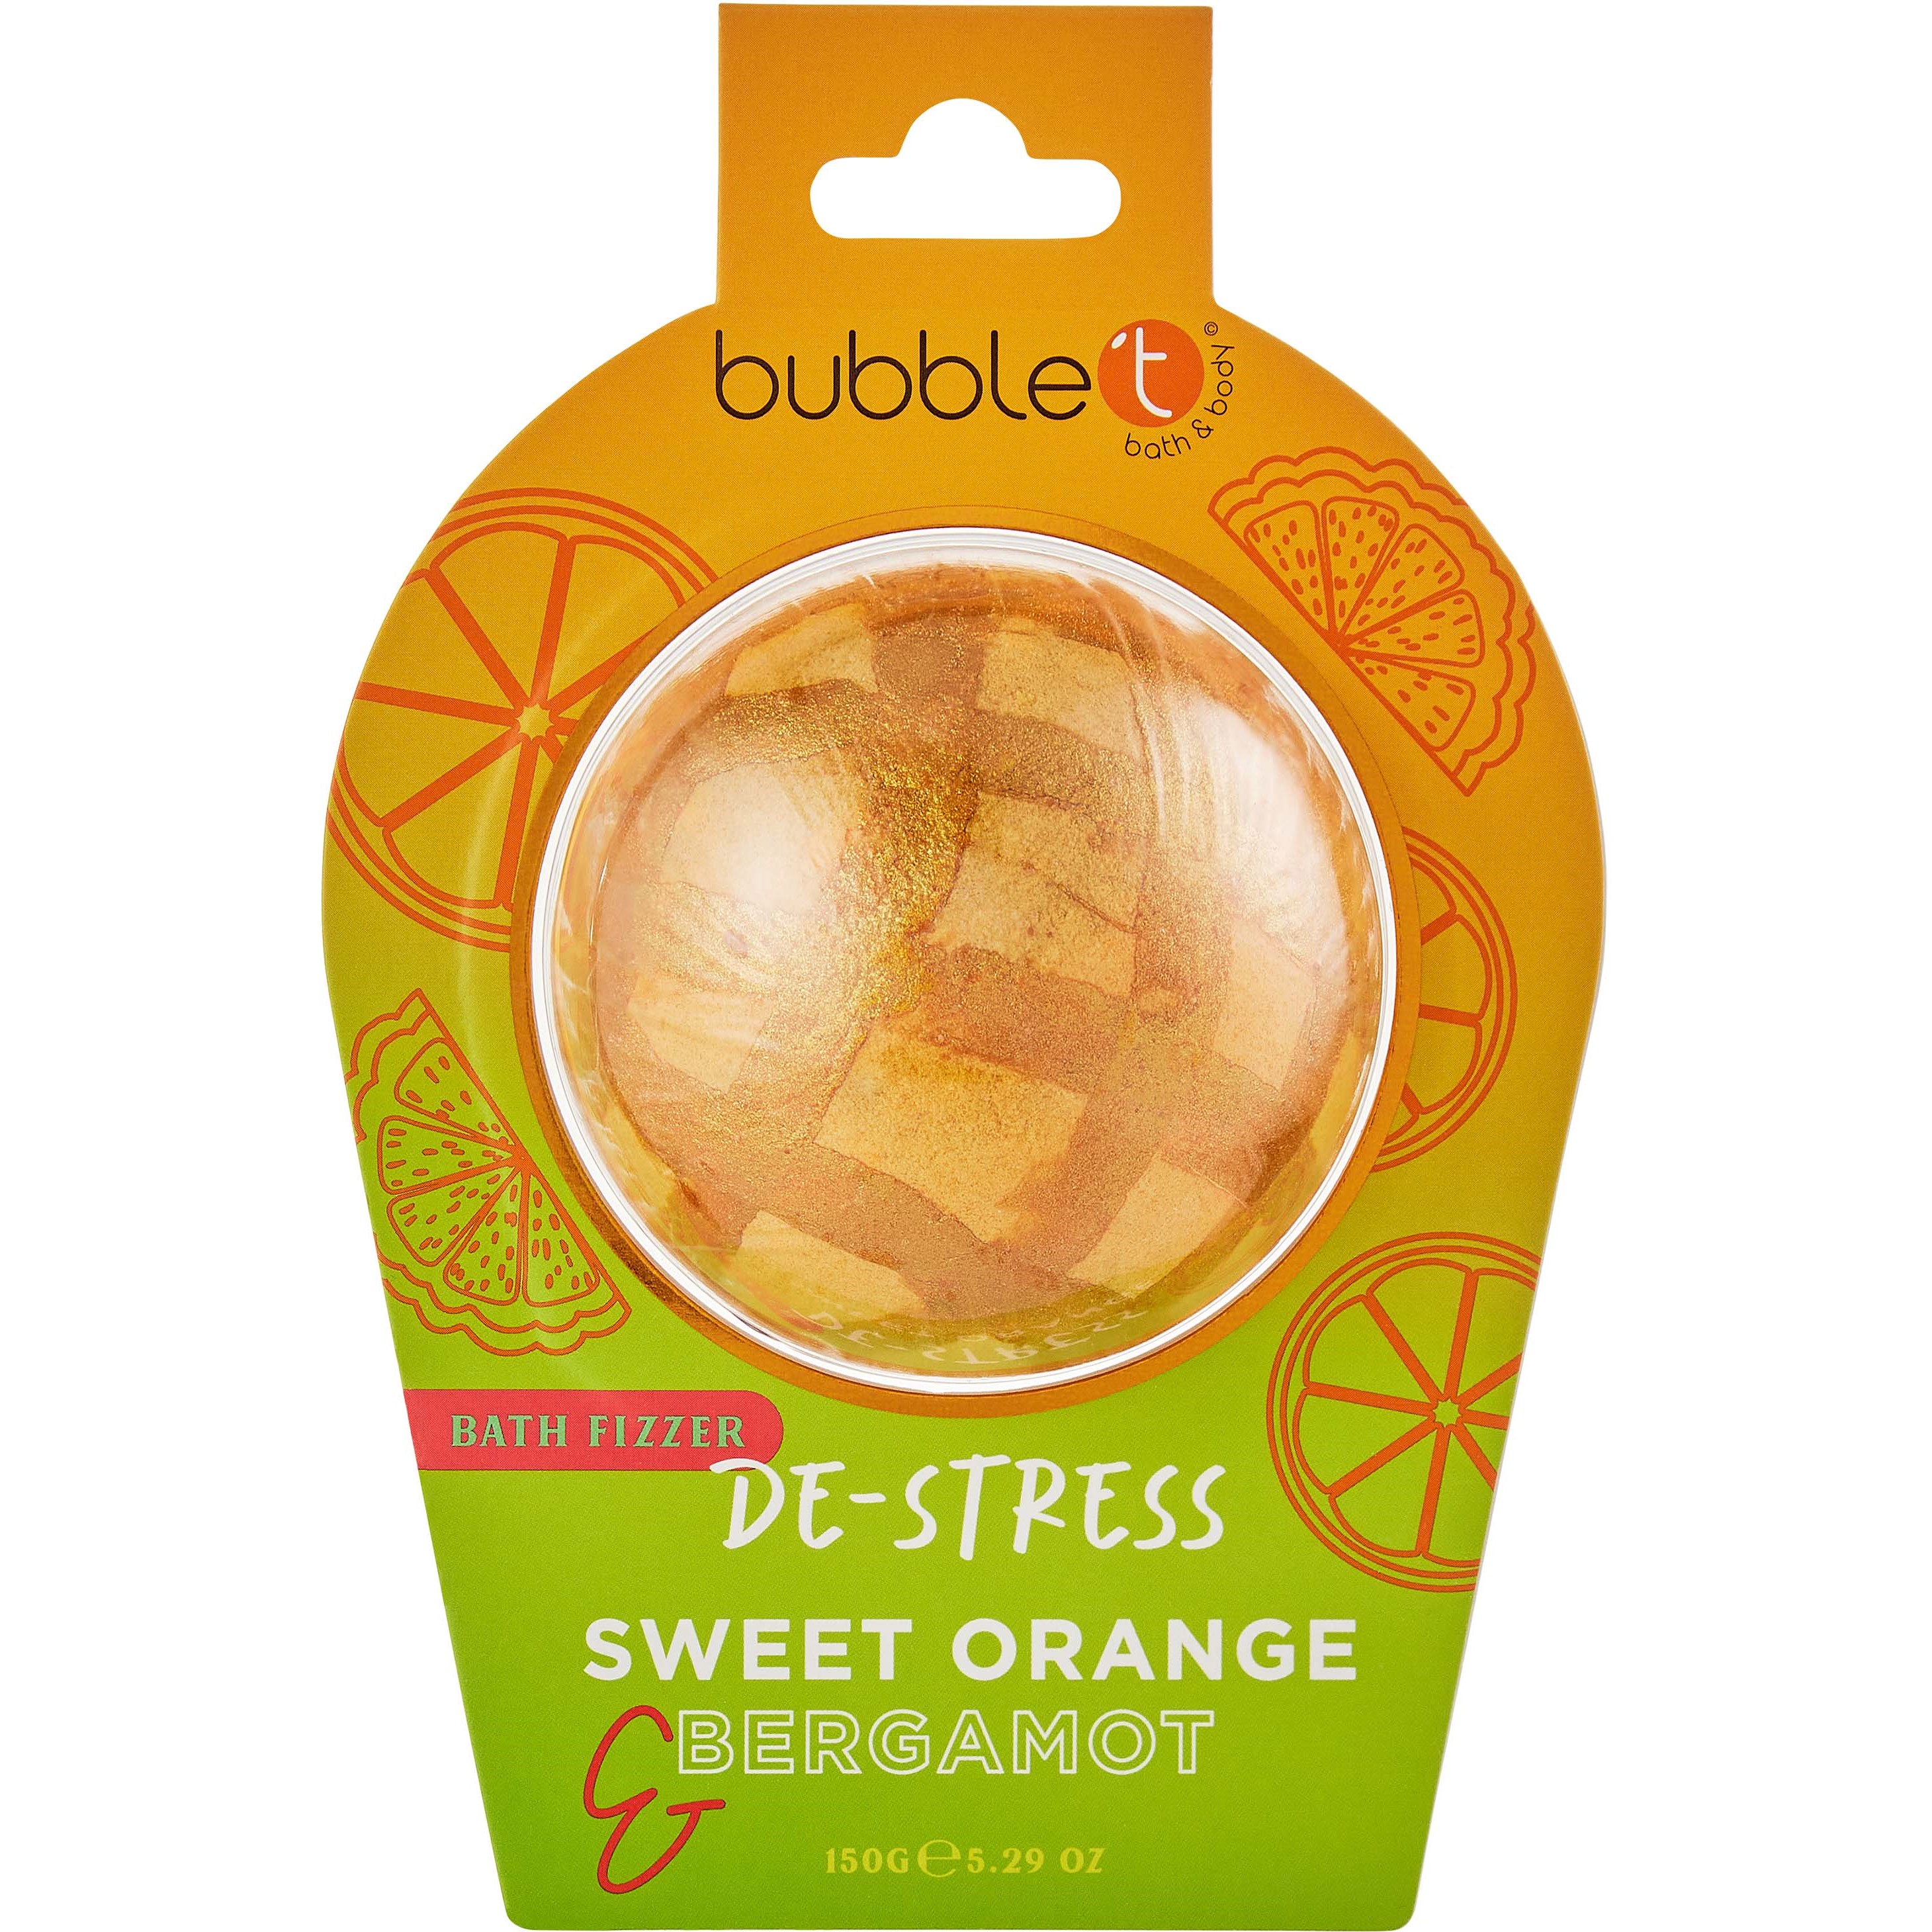 Läs mer om BubbleT Bath Fizzer De-stress Sweet Orange & Bergamot